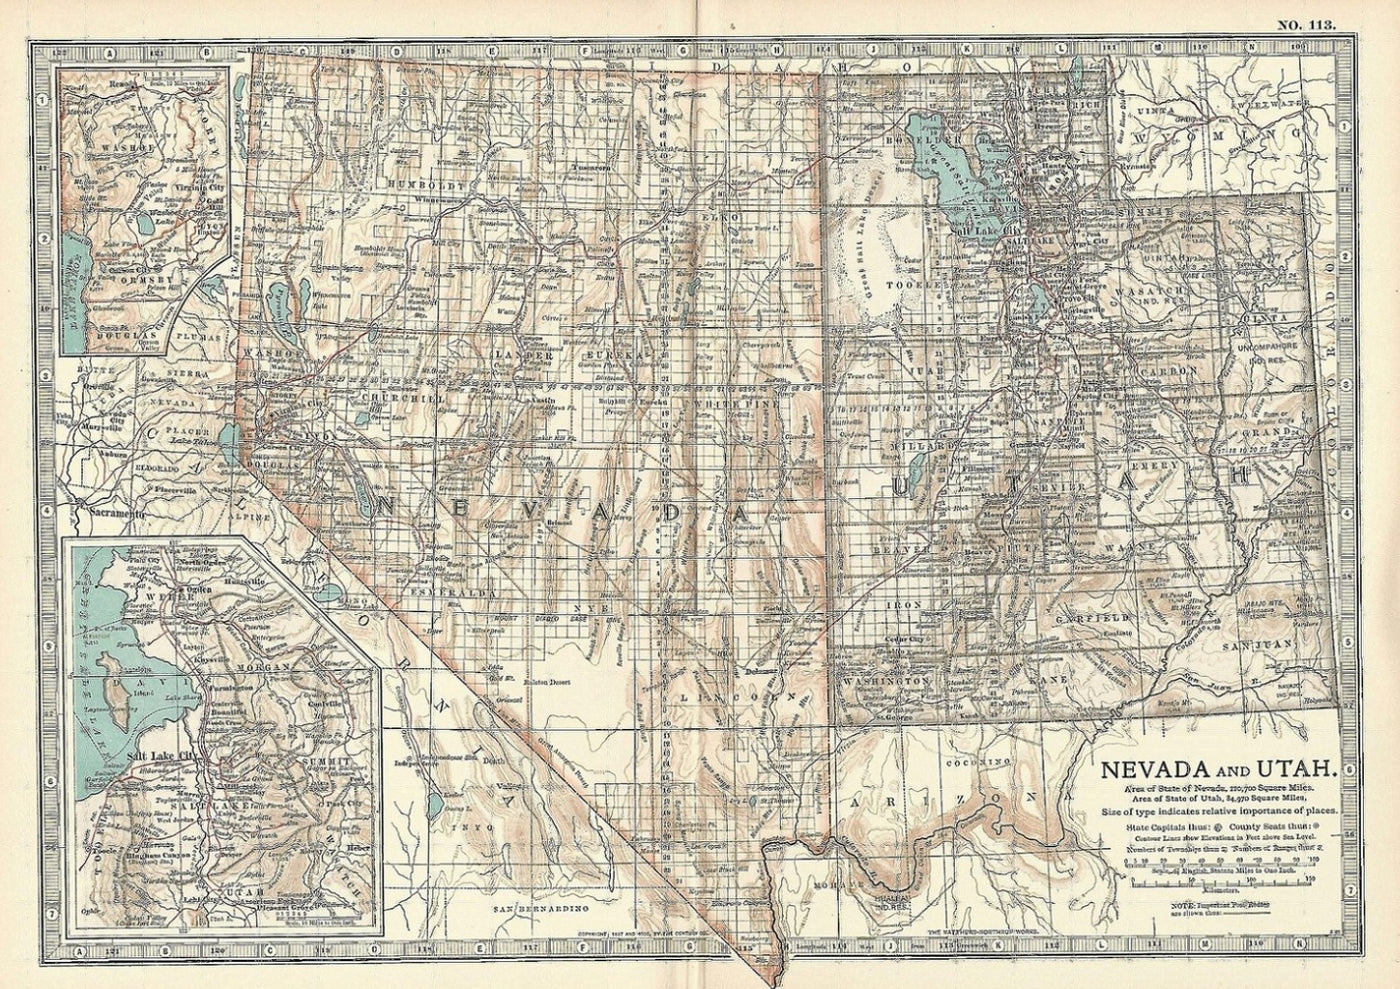 Nevada and Utah antique map Encyclopedia Britannica 1903